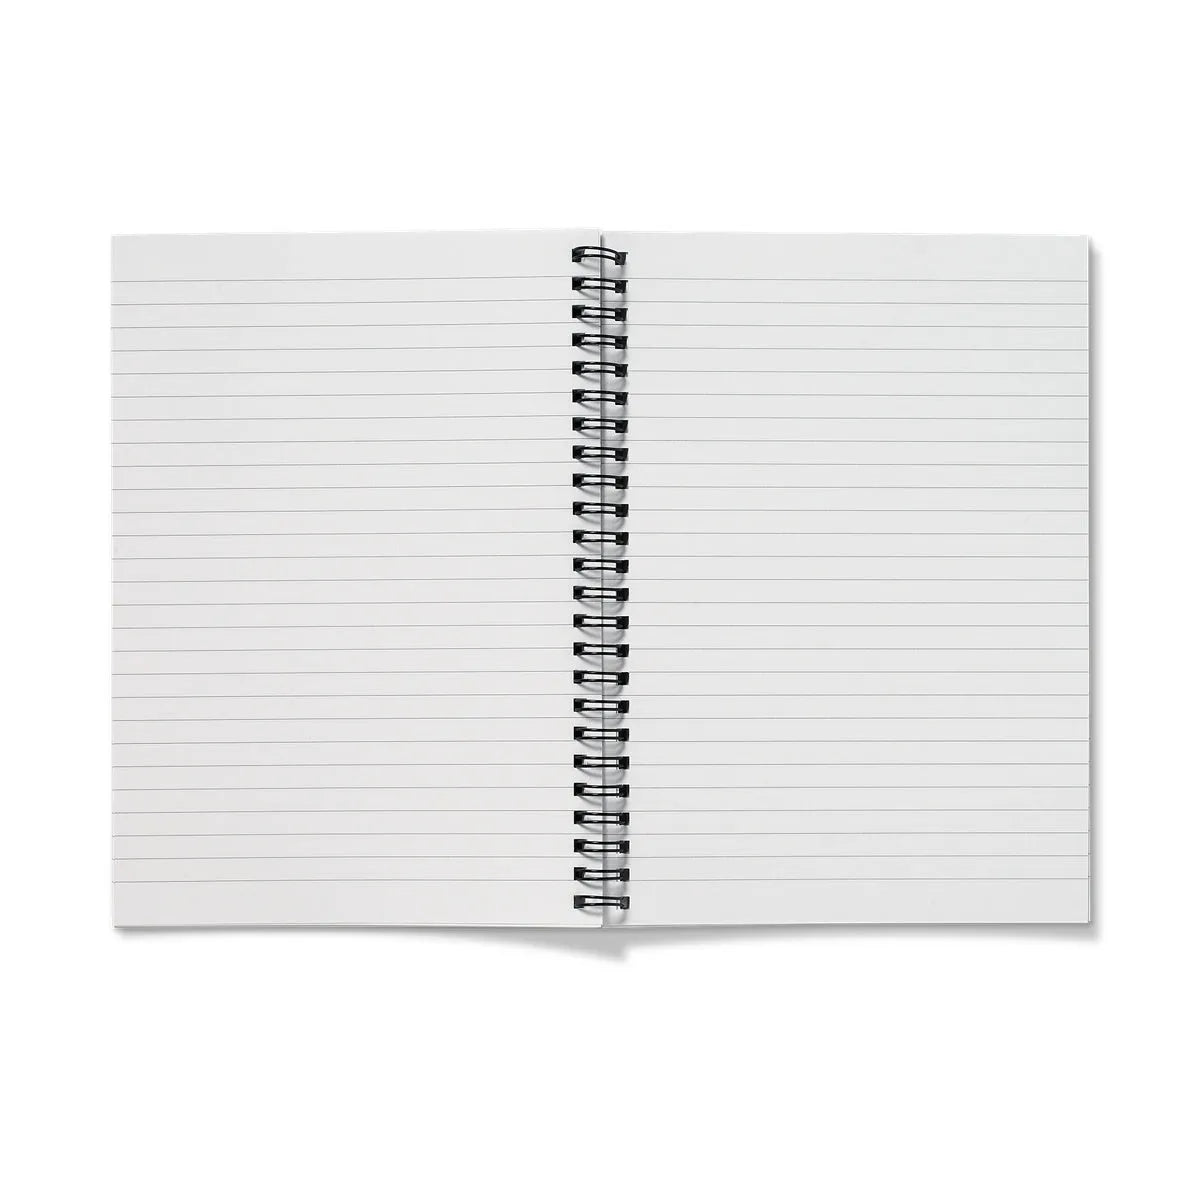 Marigolden Notebook - Notebooks & Notepads - Aesthetic Art